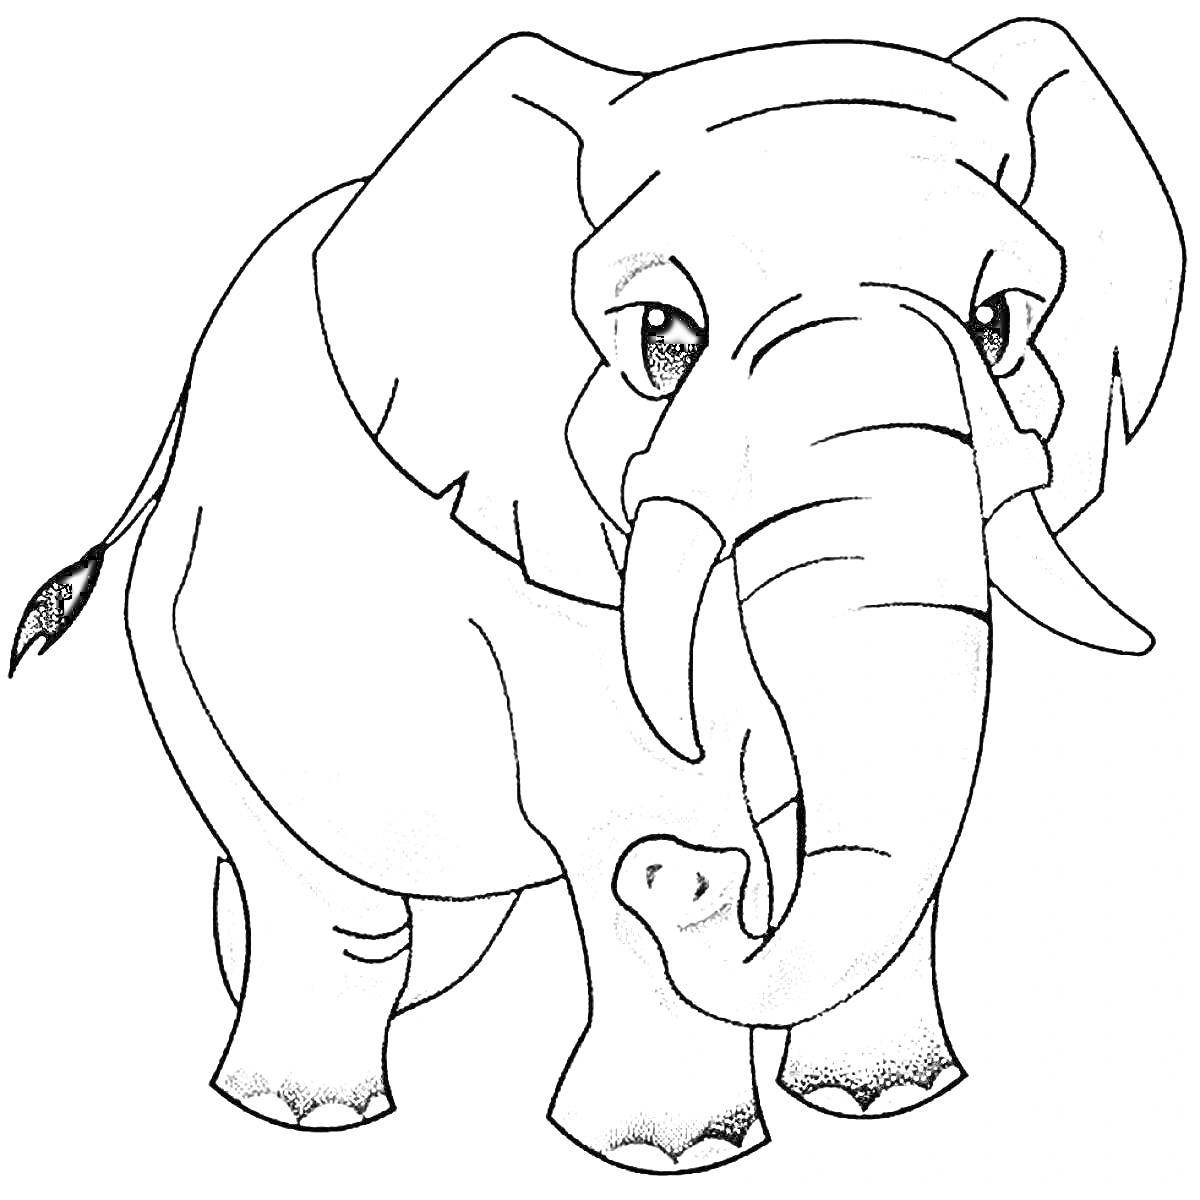 Слон, повернутый к зрителю, с большими ушами и хоботом, черно-белая раскраска